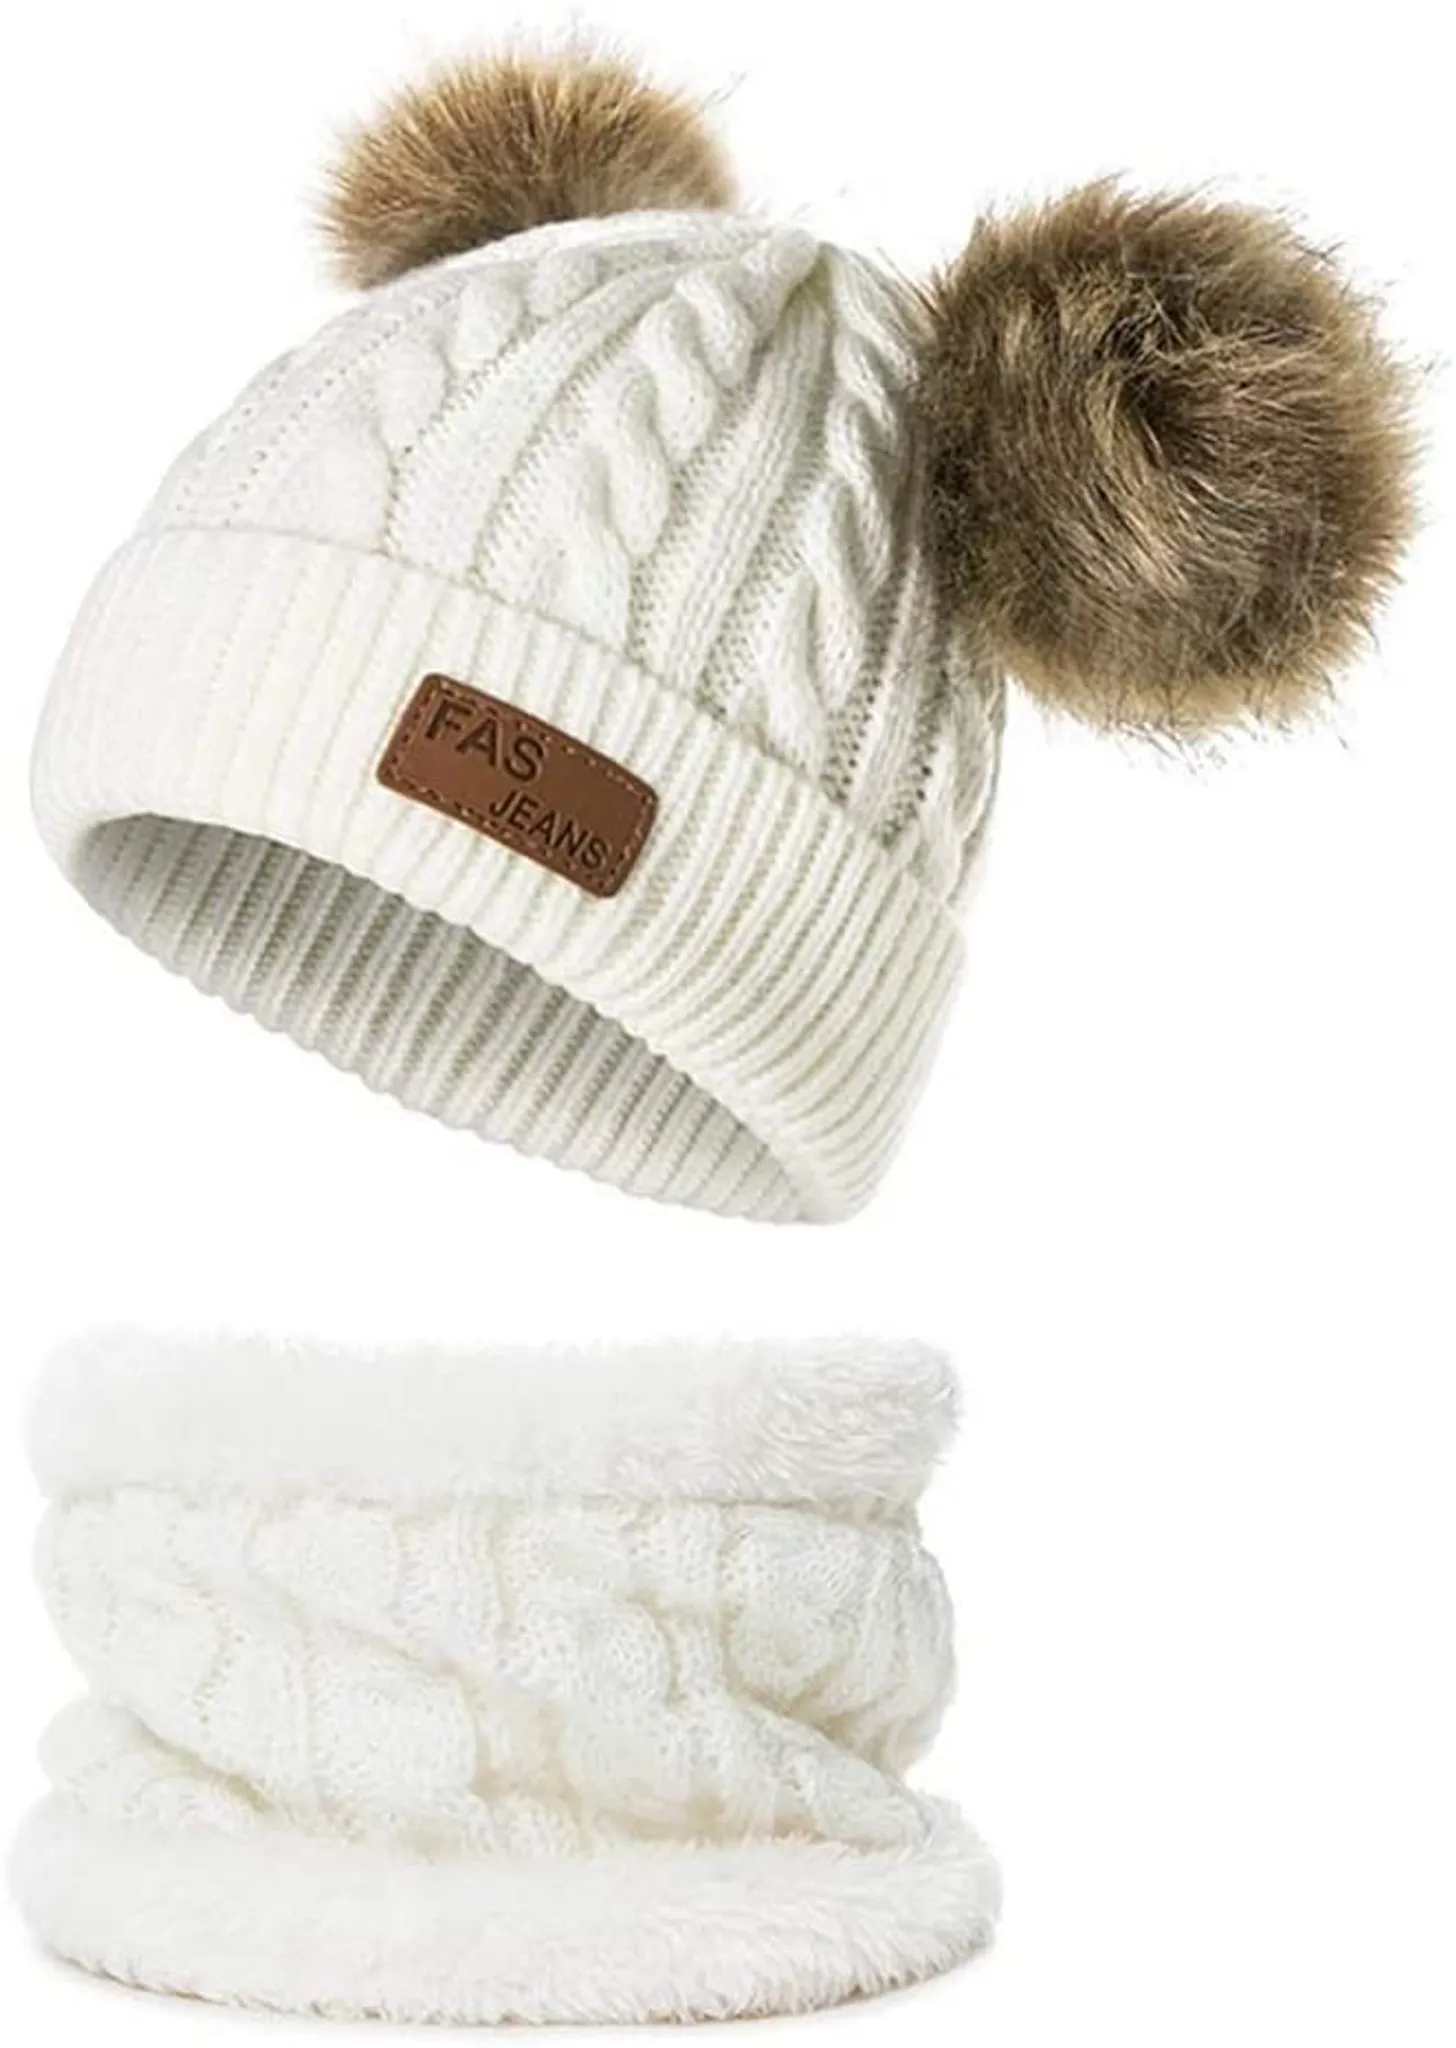 und Außenbereich ASLEAK Winter Baby Hats Kleinkind Mütze Schal Set Earflap ap Knit Warm halten Geeignet für 6-36 Monate Jungen oder Mädchen im Innen 